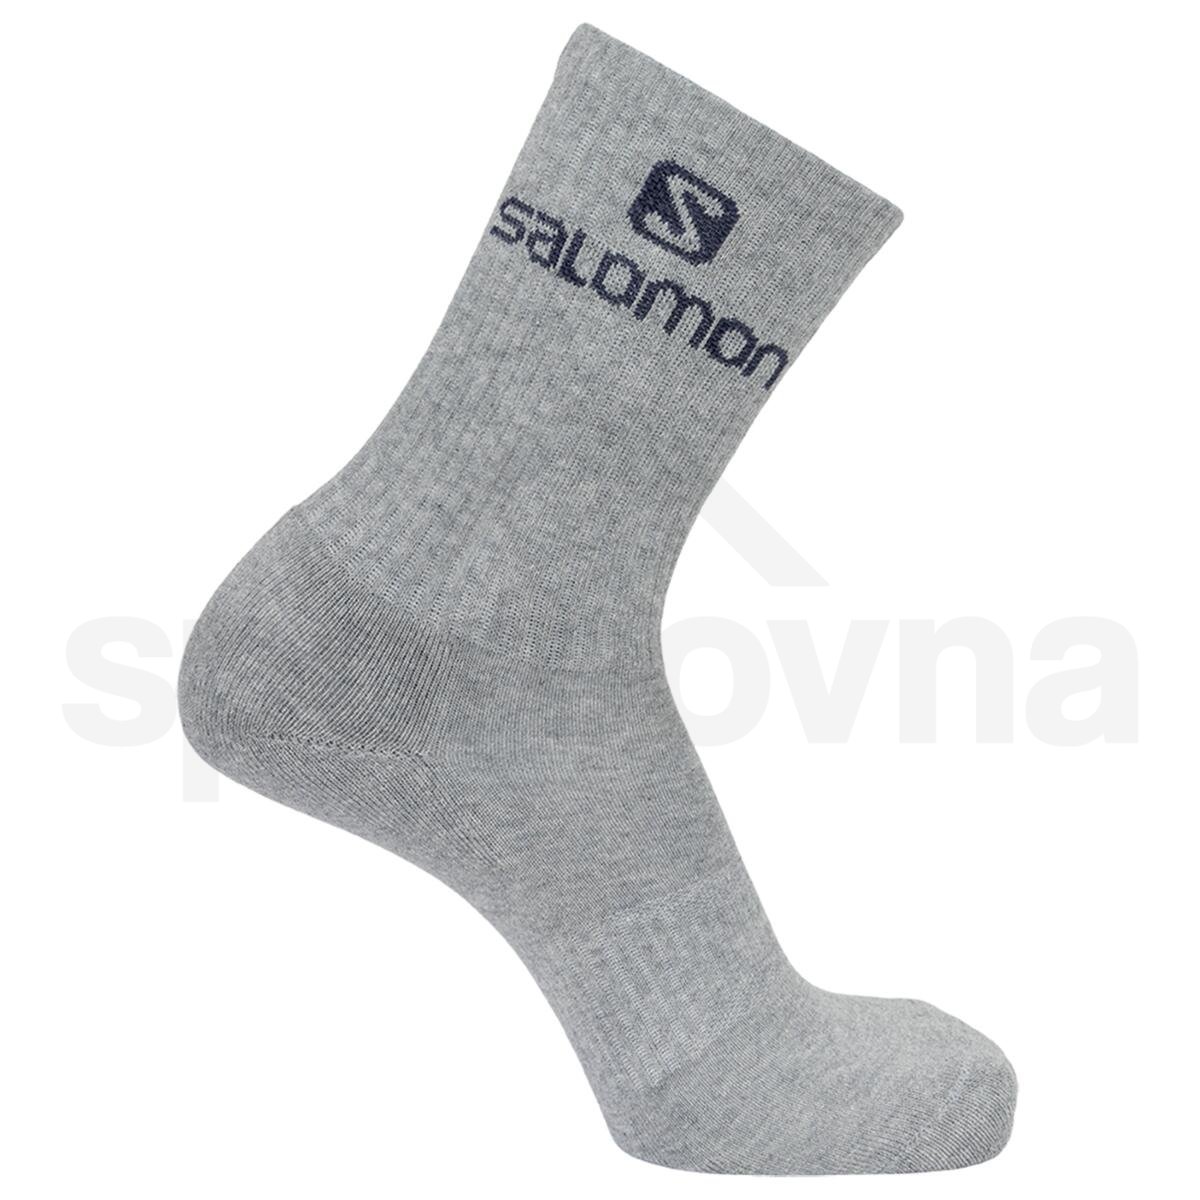 Ponožky Salomon Everyday Crew 3-Pack - bílá/šedá/černá